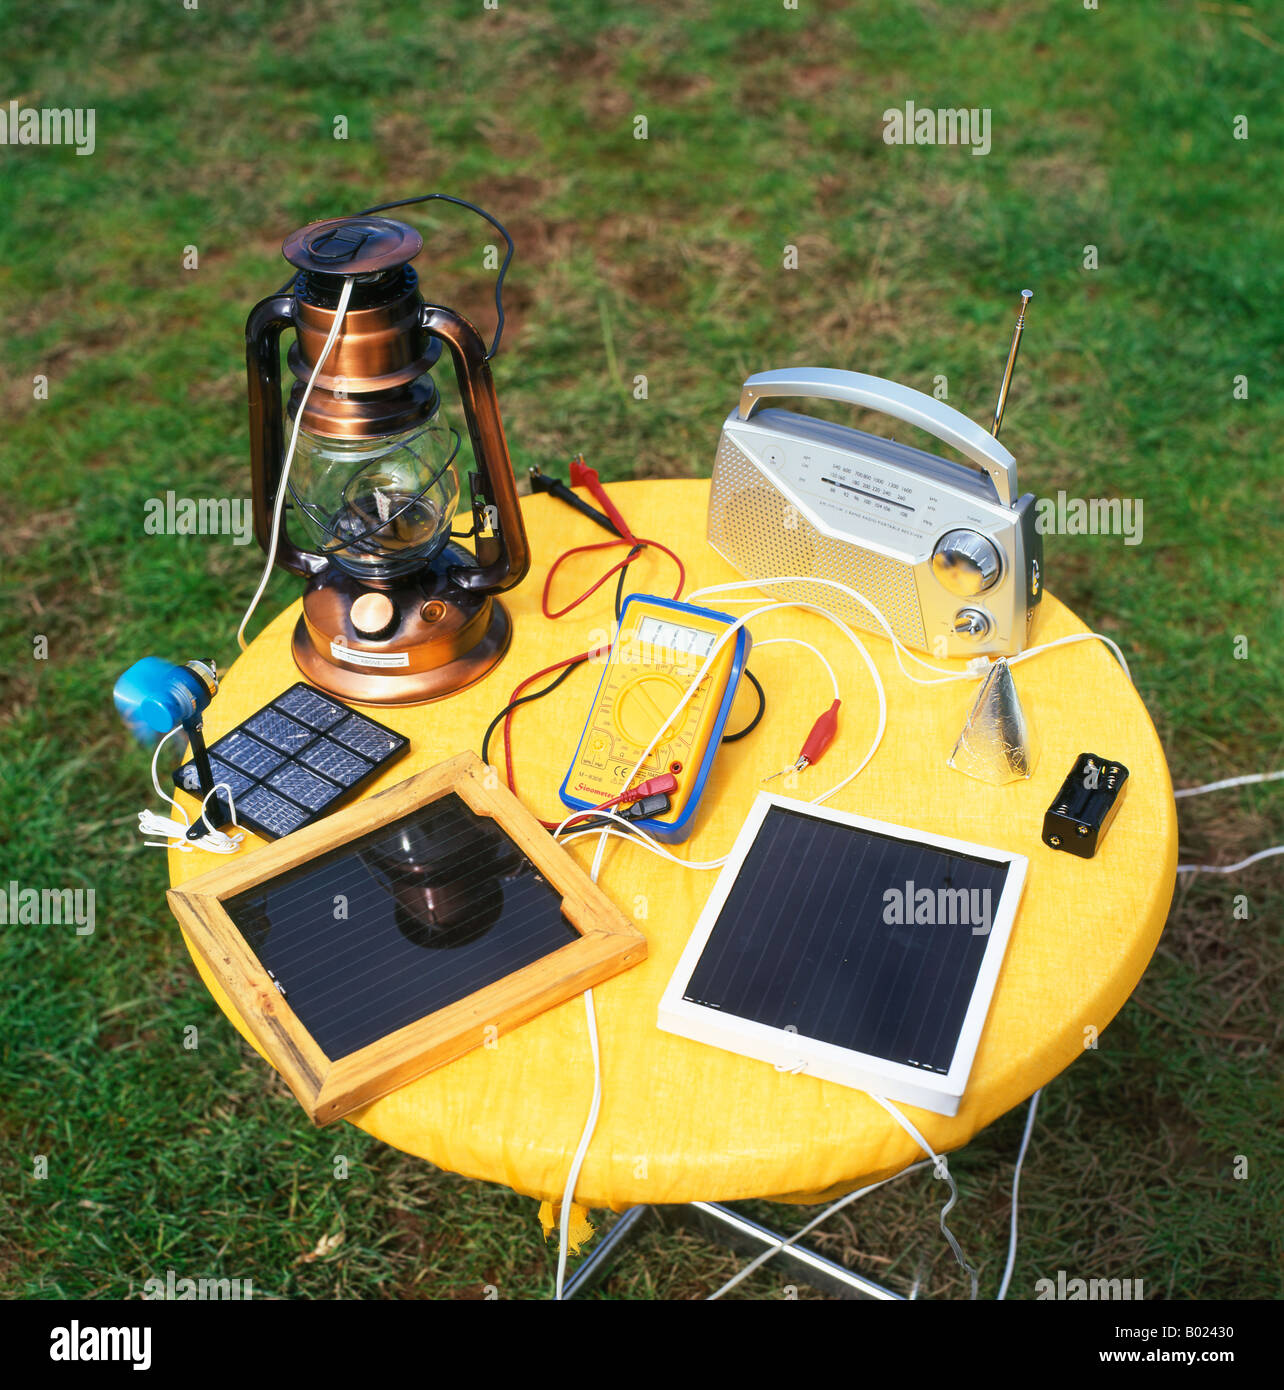 Appareils solaires, lanterne, radio, tablette, gadgets et gadgets fabriqués  en Afrique sur une petite table Hay-on-Wye, pays de Galles, Royaume-Uni  KATHY DEWITT Photo Stock - Alamy